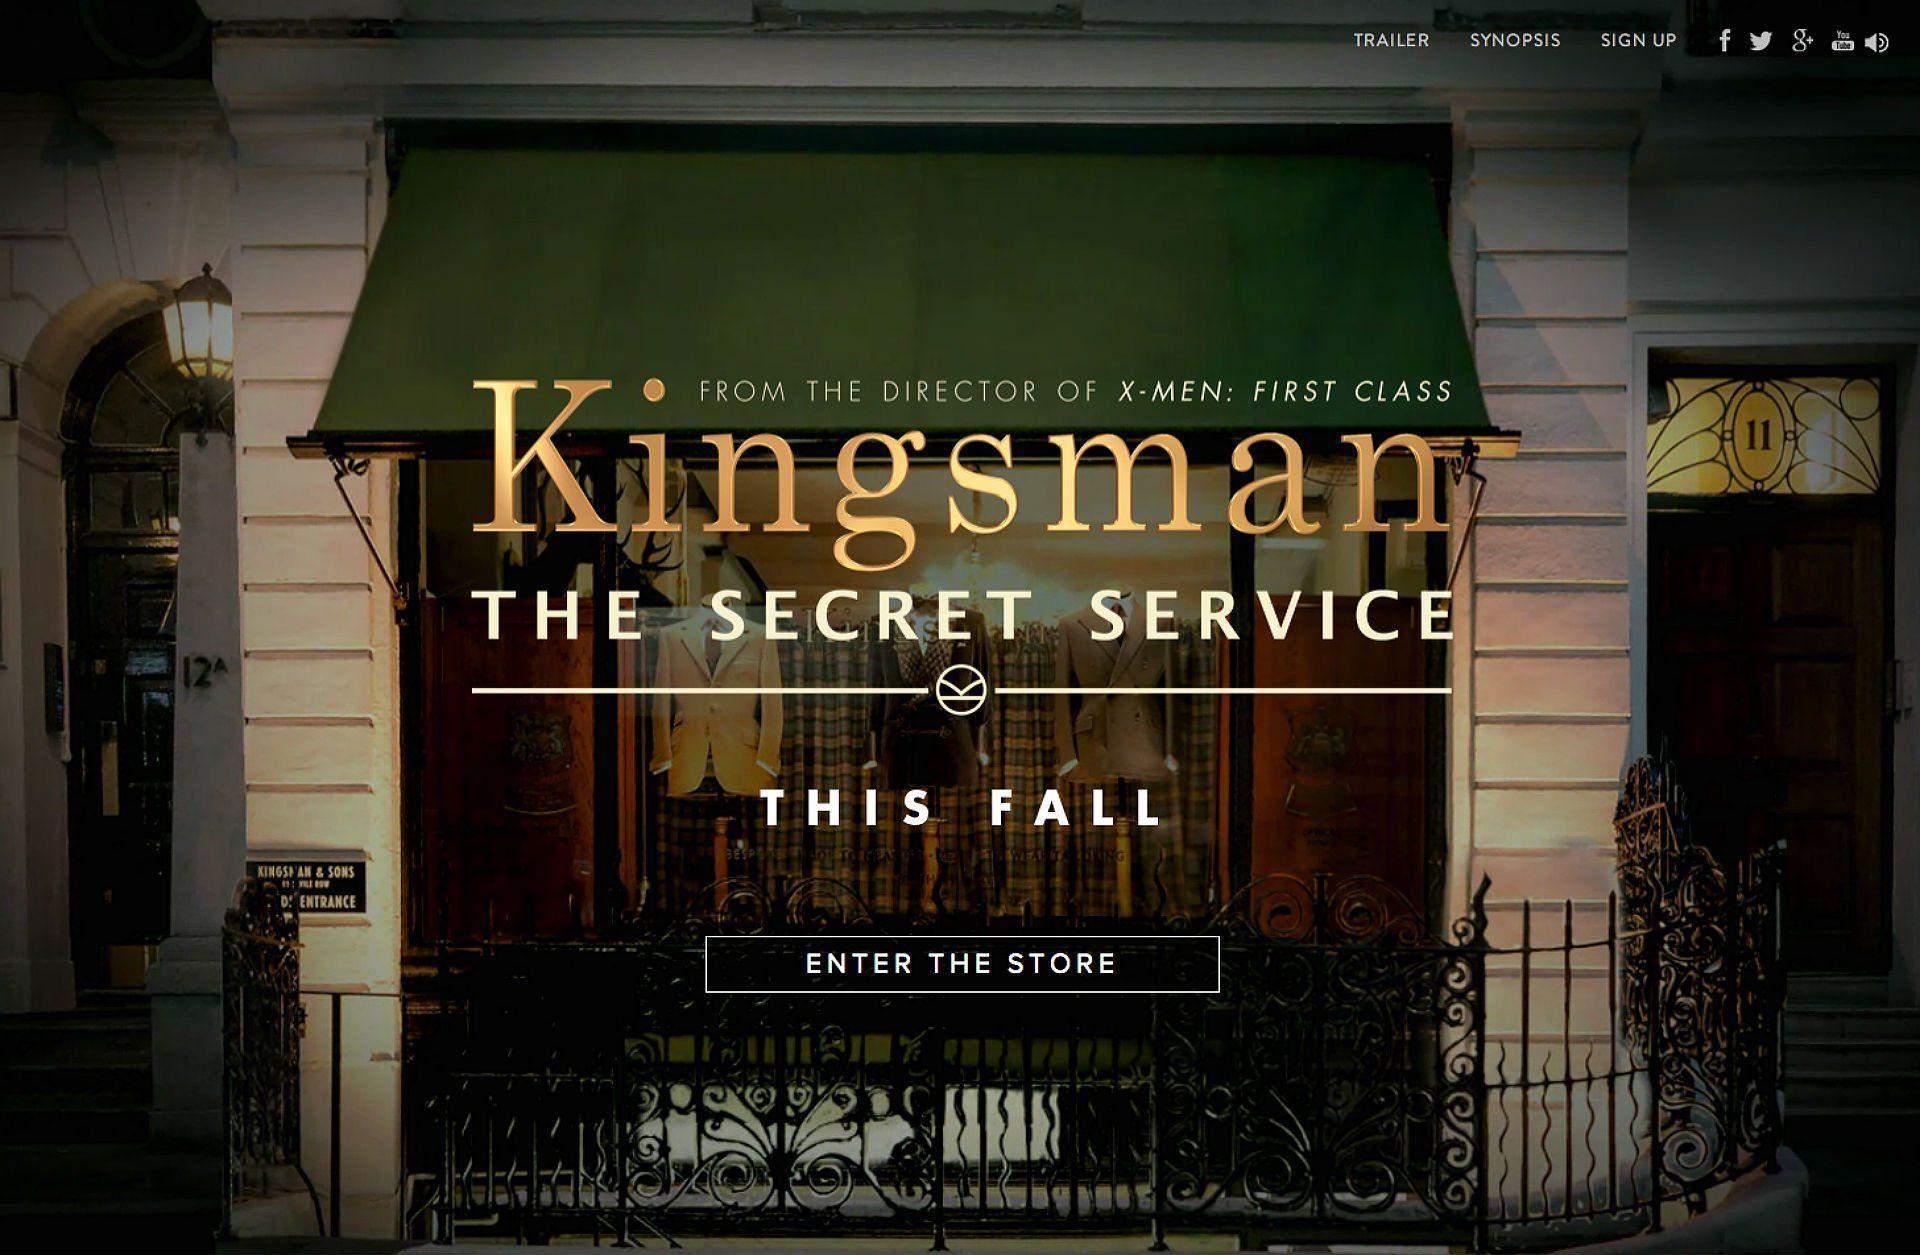 the kingsman 2 watch online free